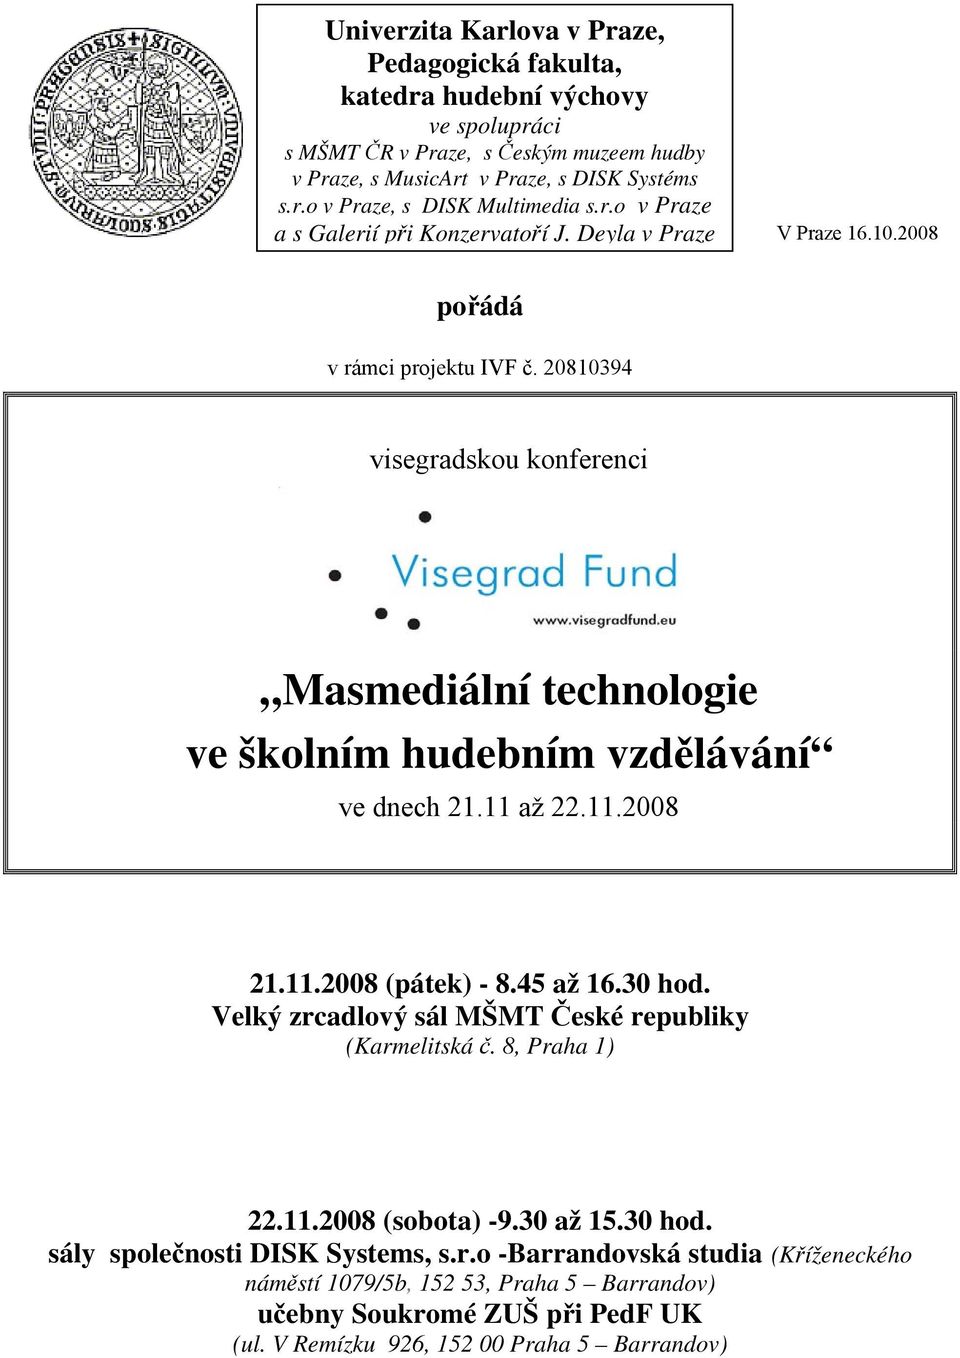 20810394 visegradskou konferenci Masmediální technologie ve školním hudebním vzdělávání ve dnech 21.11 až 22.11.2008 21.11.2008 (pátek) - 8.45 až 16.30 hod.